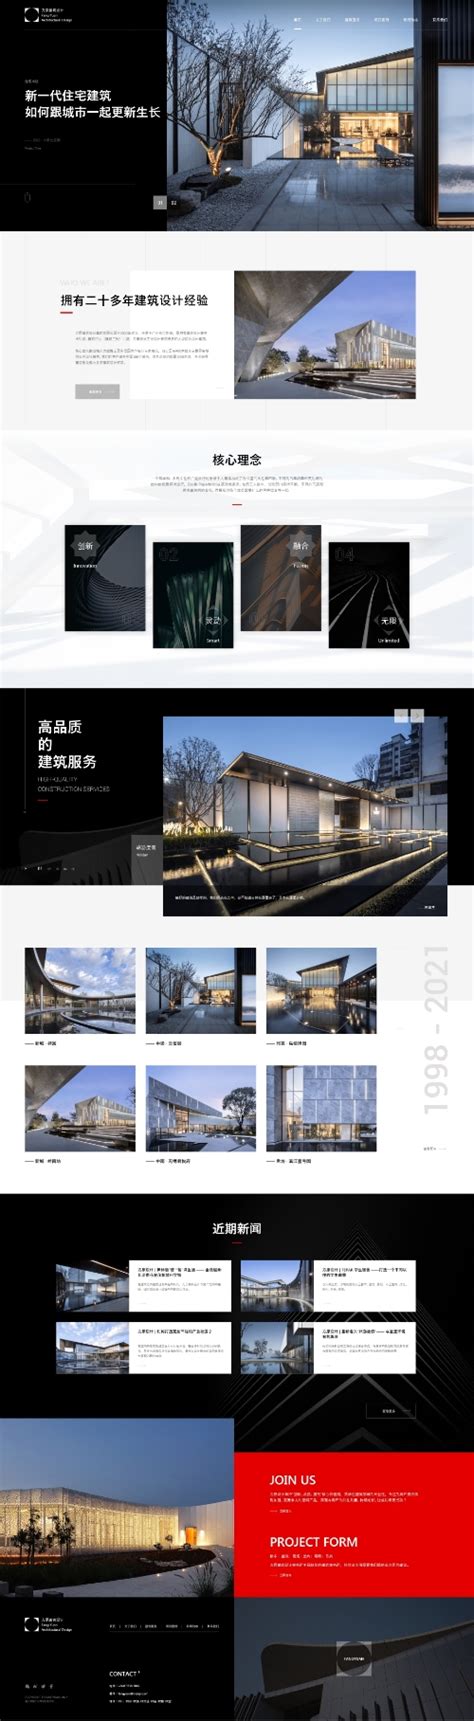 H5建站-H5商城-响应式建站-网站模板 - 微梦科技